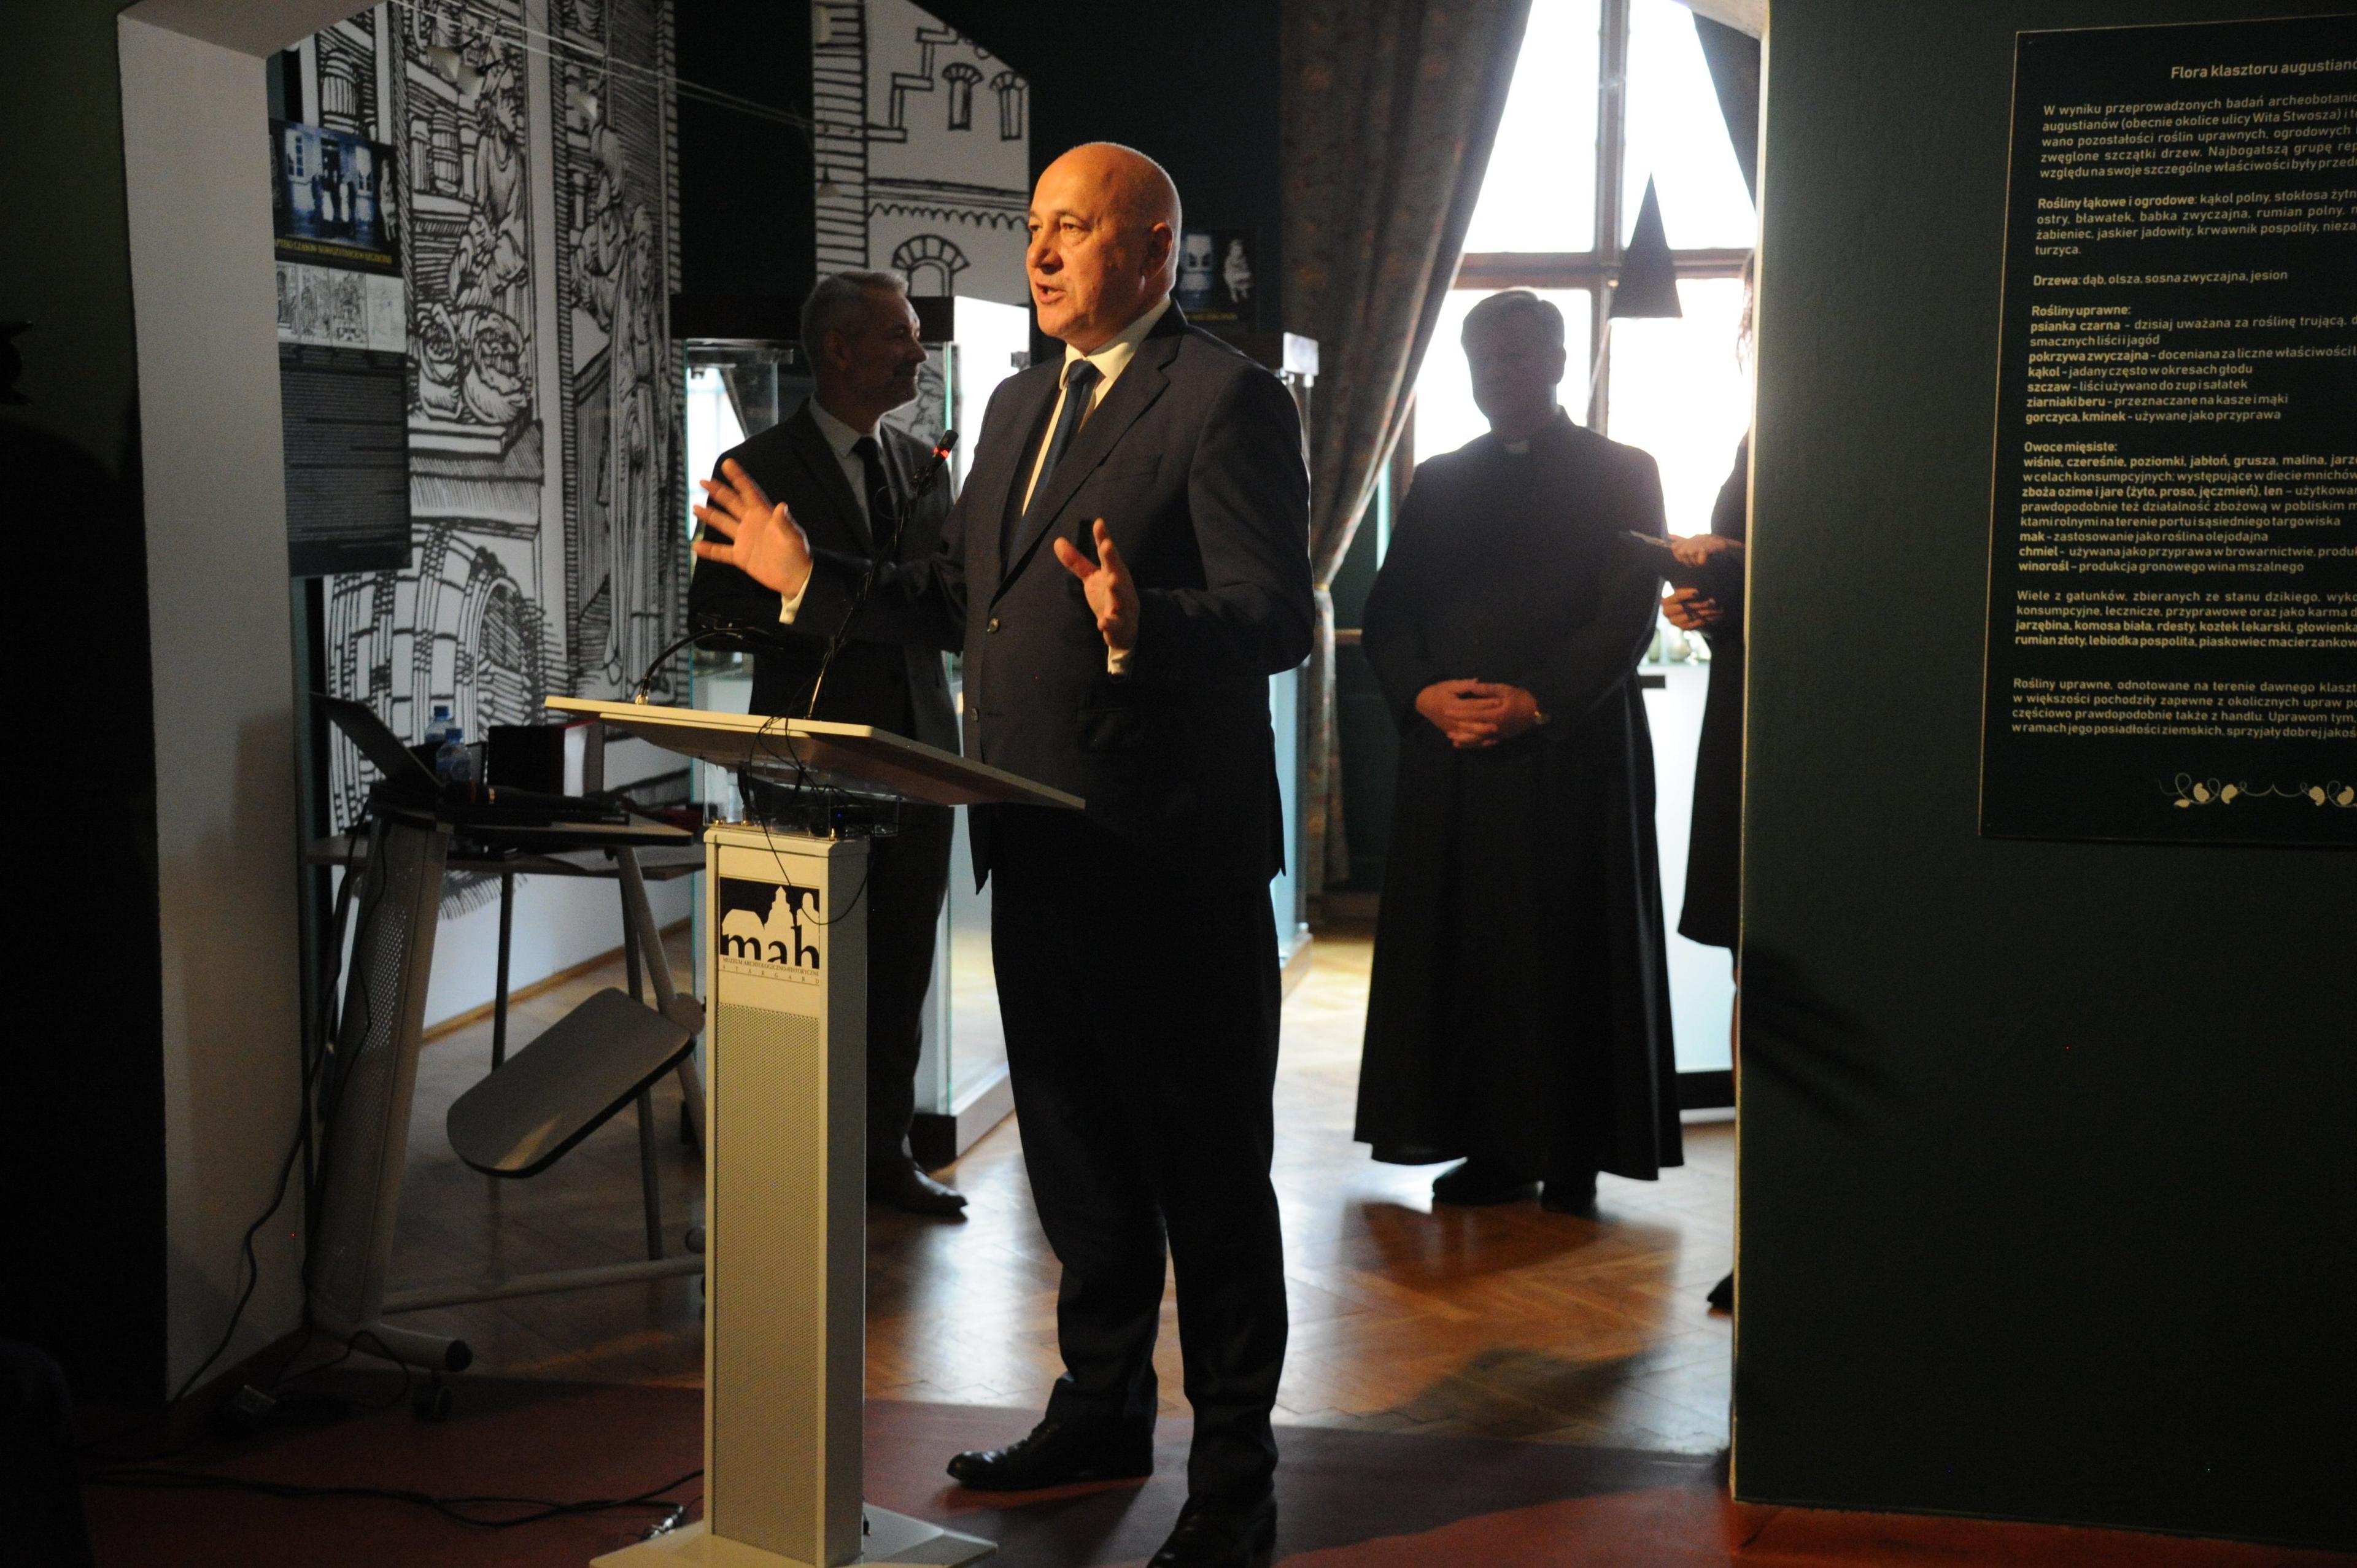 Męzczyzna (Joachim Brudziński) przemawia w ciemnym, przypominającym muzeum pomiszczeniu, z tyłu sylwetka księdza